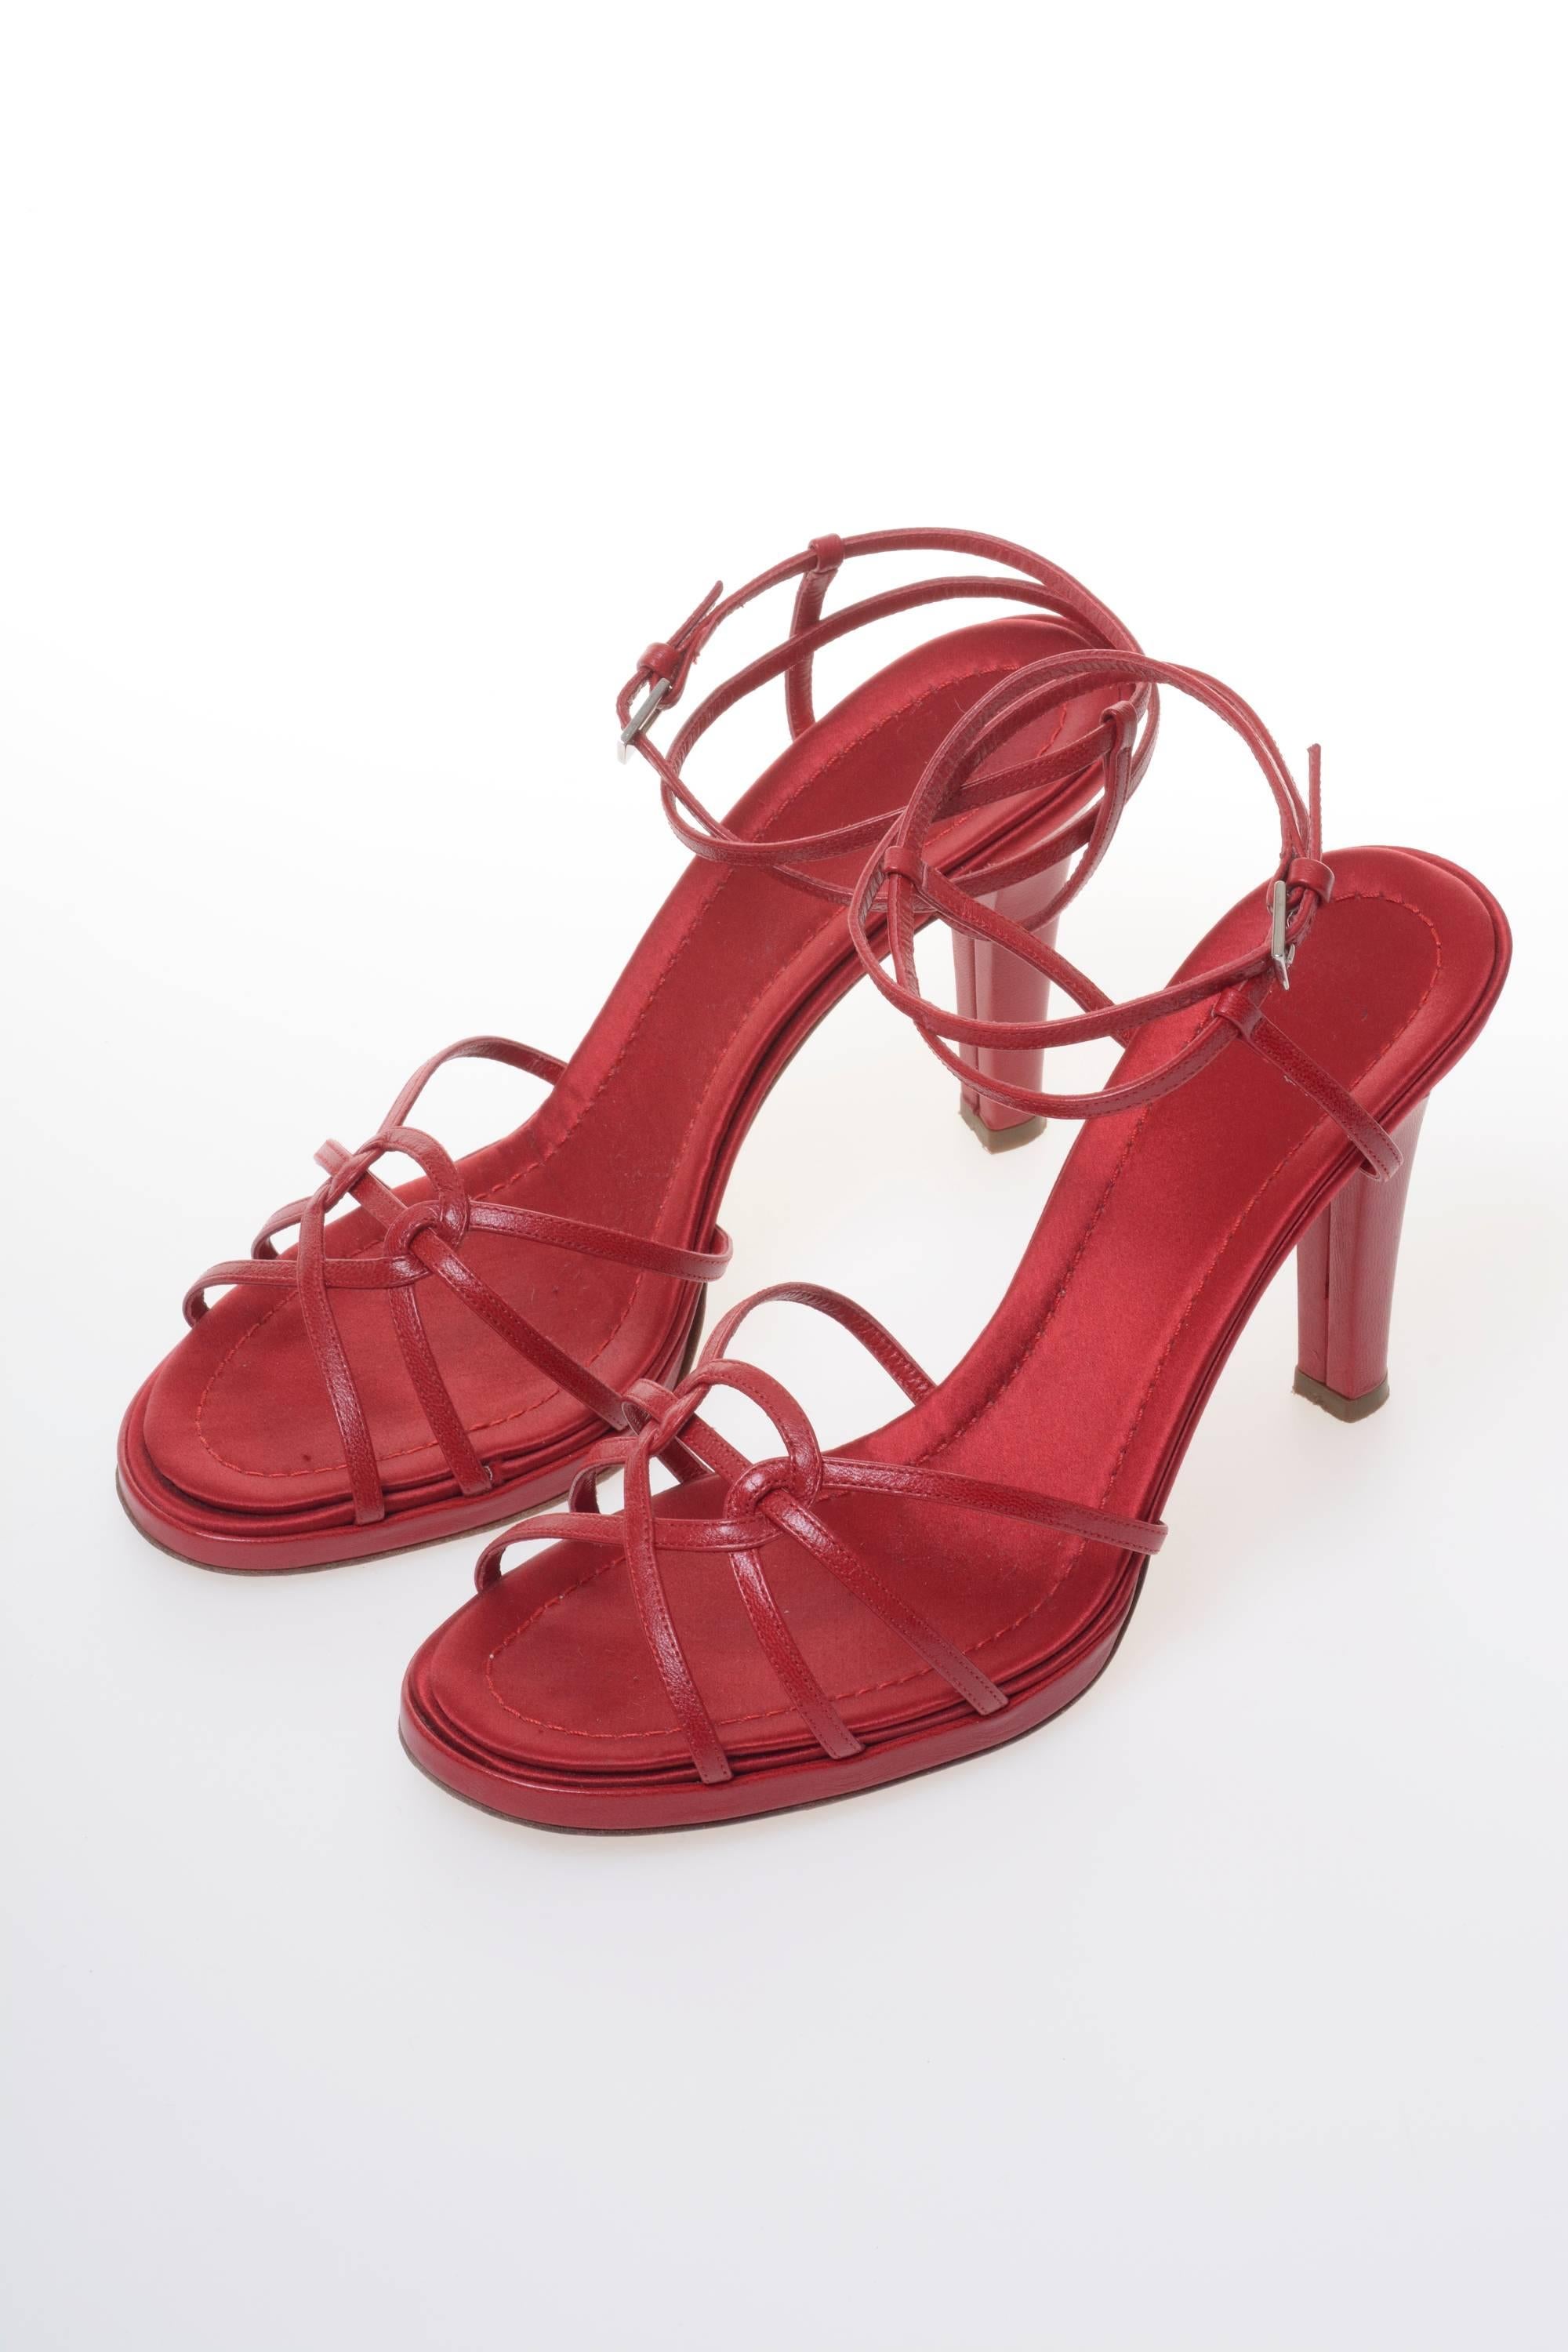 Brown Valentino Garavani Red Leather High Heeled Sandals